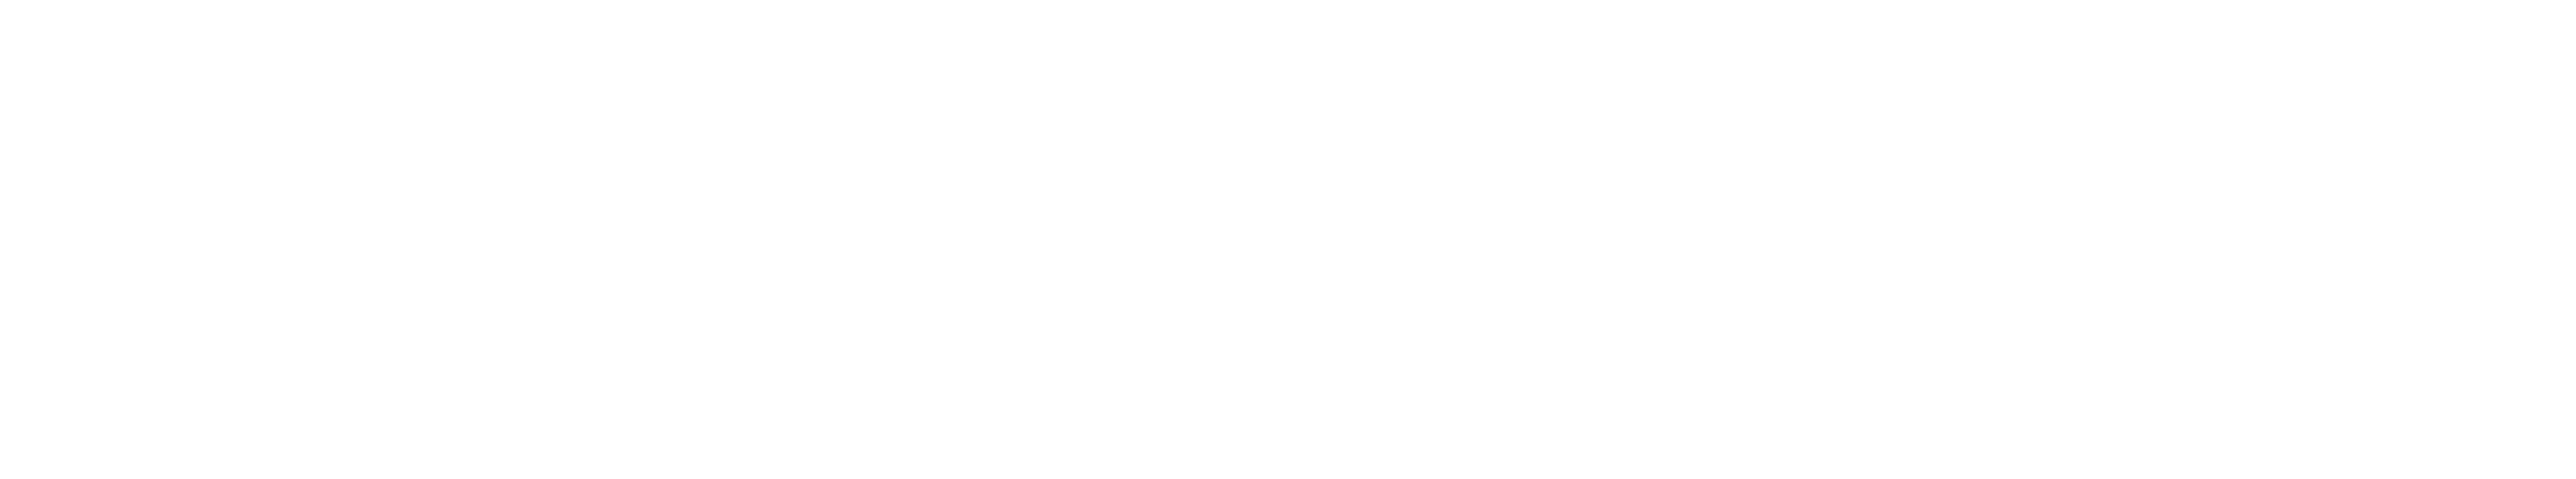 Kurozora full logo white RGB monochrome